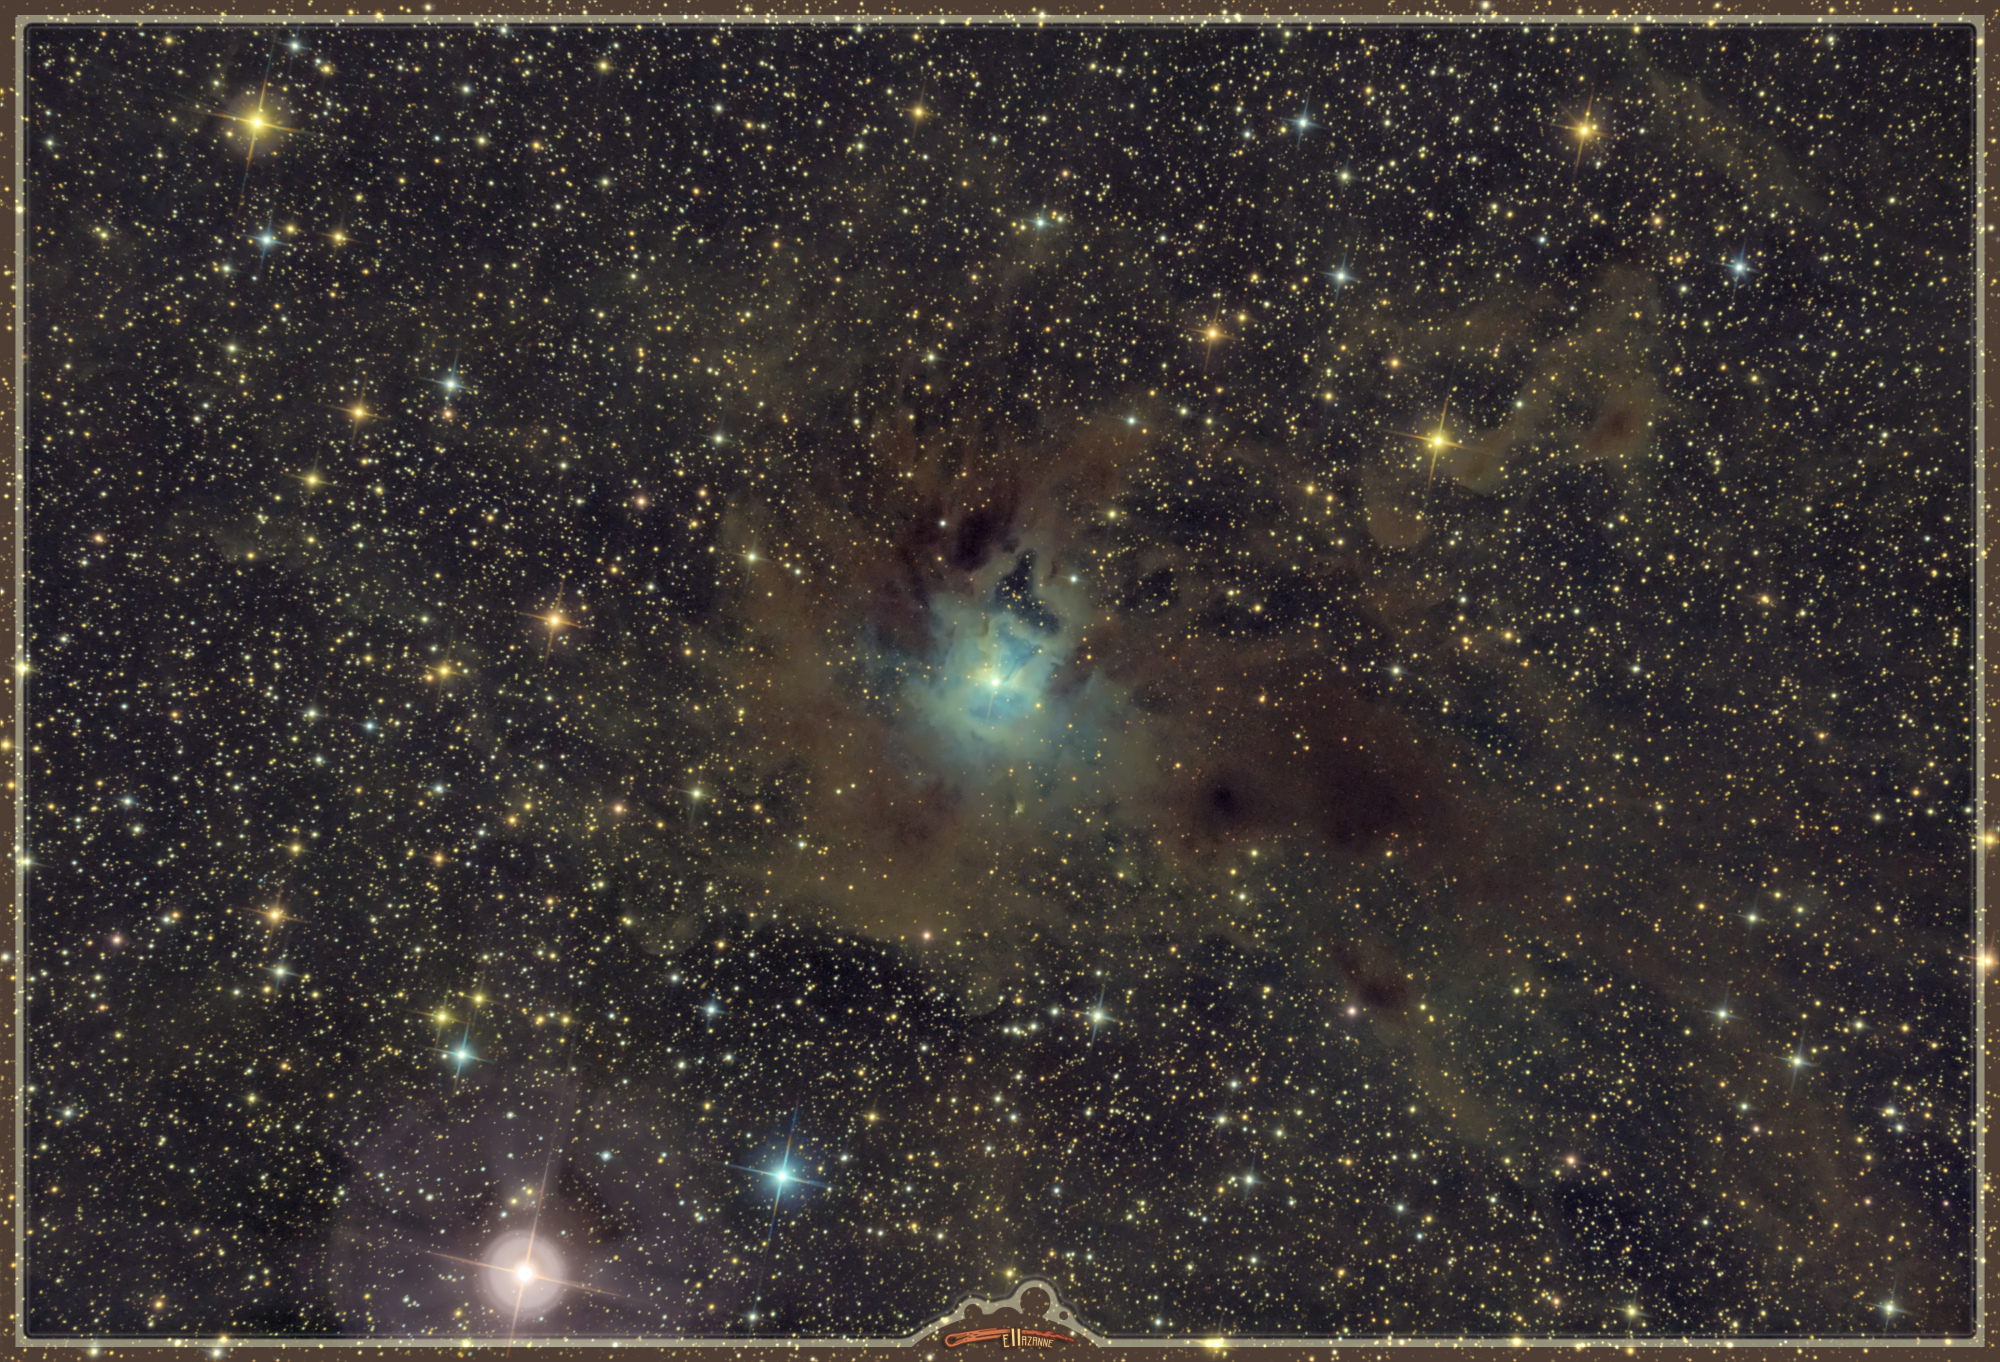 64bebfab2ac6b_NGC7023NbuleusedelIrisau150600Asi294MC-15AM5LL-FINALE.thumb.jpg.c9d633600bb1eddb0faaa863ee9cb887.jpg